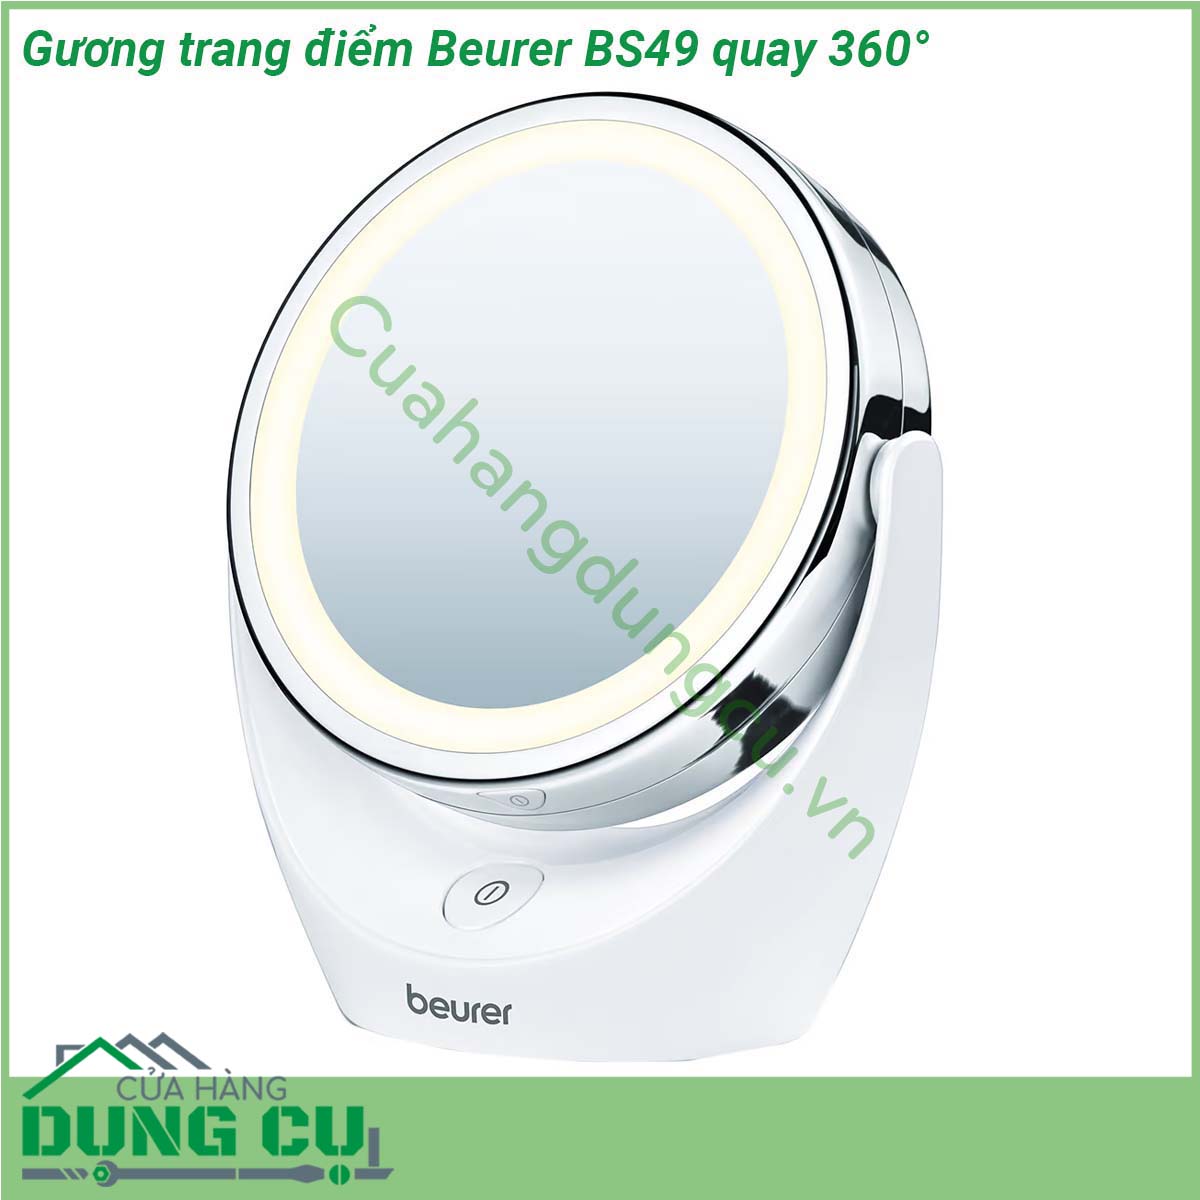 Gương trang điểm Beurer BS49 quay 360° với kích thước nhỏ gọn 450g bề mặt gương rộng 11cm chiều cao-rộng- sâu là 17 5 x 19 x 10 cm sử dụng pin AAA 1 5V để duy trì hoạt động của 12 đèn LED  Với thiết kế đế đỡ có thể xoay đến 360 độ  gương trang điểm 2 mặt Beurer BS49 giúp bạn dễ dàng thay đổi giữa 2 mặt gương cho bạn sự linh hoạt khi sử dụng